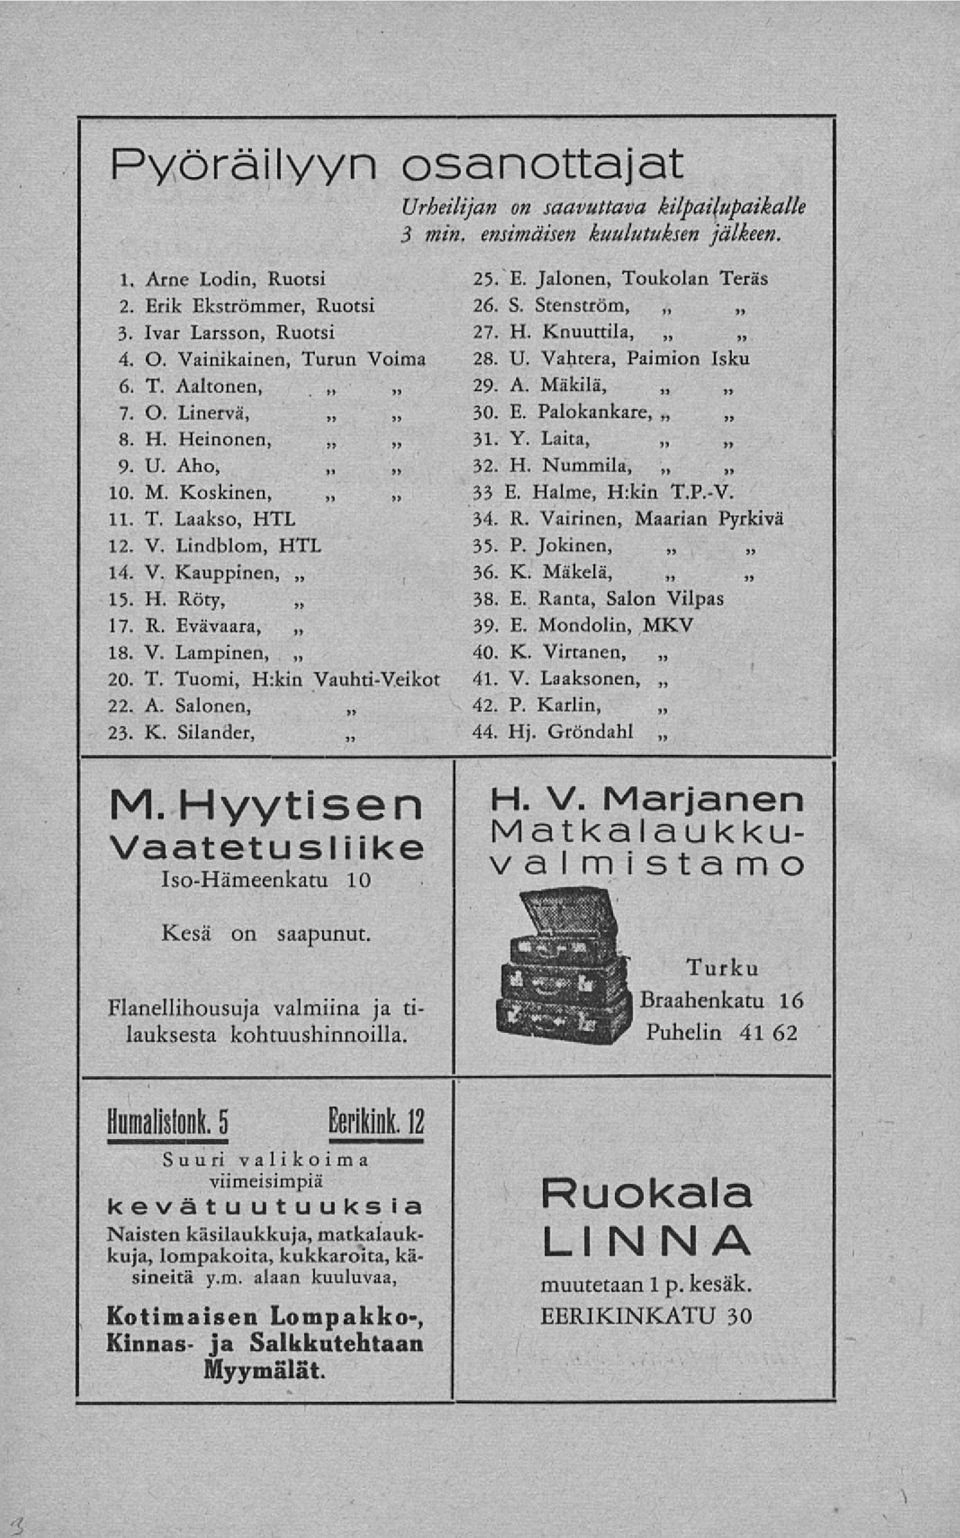 Y. Laita, 9. U. Aho, 32. H. Nummila, 10. M. Koskinen, 33 E. Halme, H.km T.P.-V. 11. T. Laakso, HTL 34. R. Vairinen, Maarian Pyrkivä 12. V. Lindblom, HTL 35. P. Jokinen, 36. K. Mäkelä, 14. V. Kauppinen, 15.